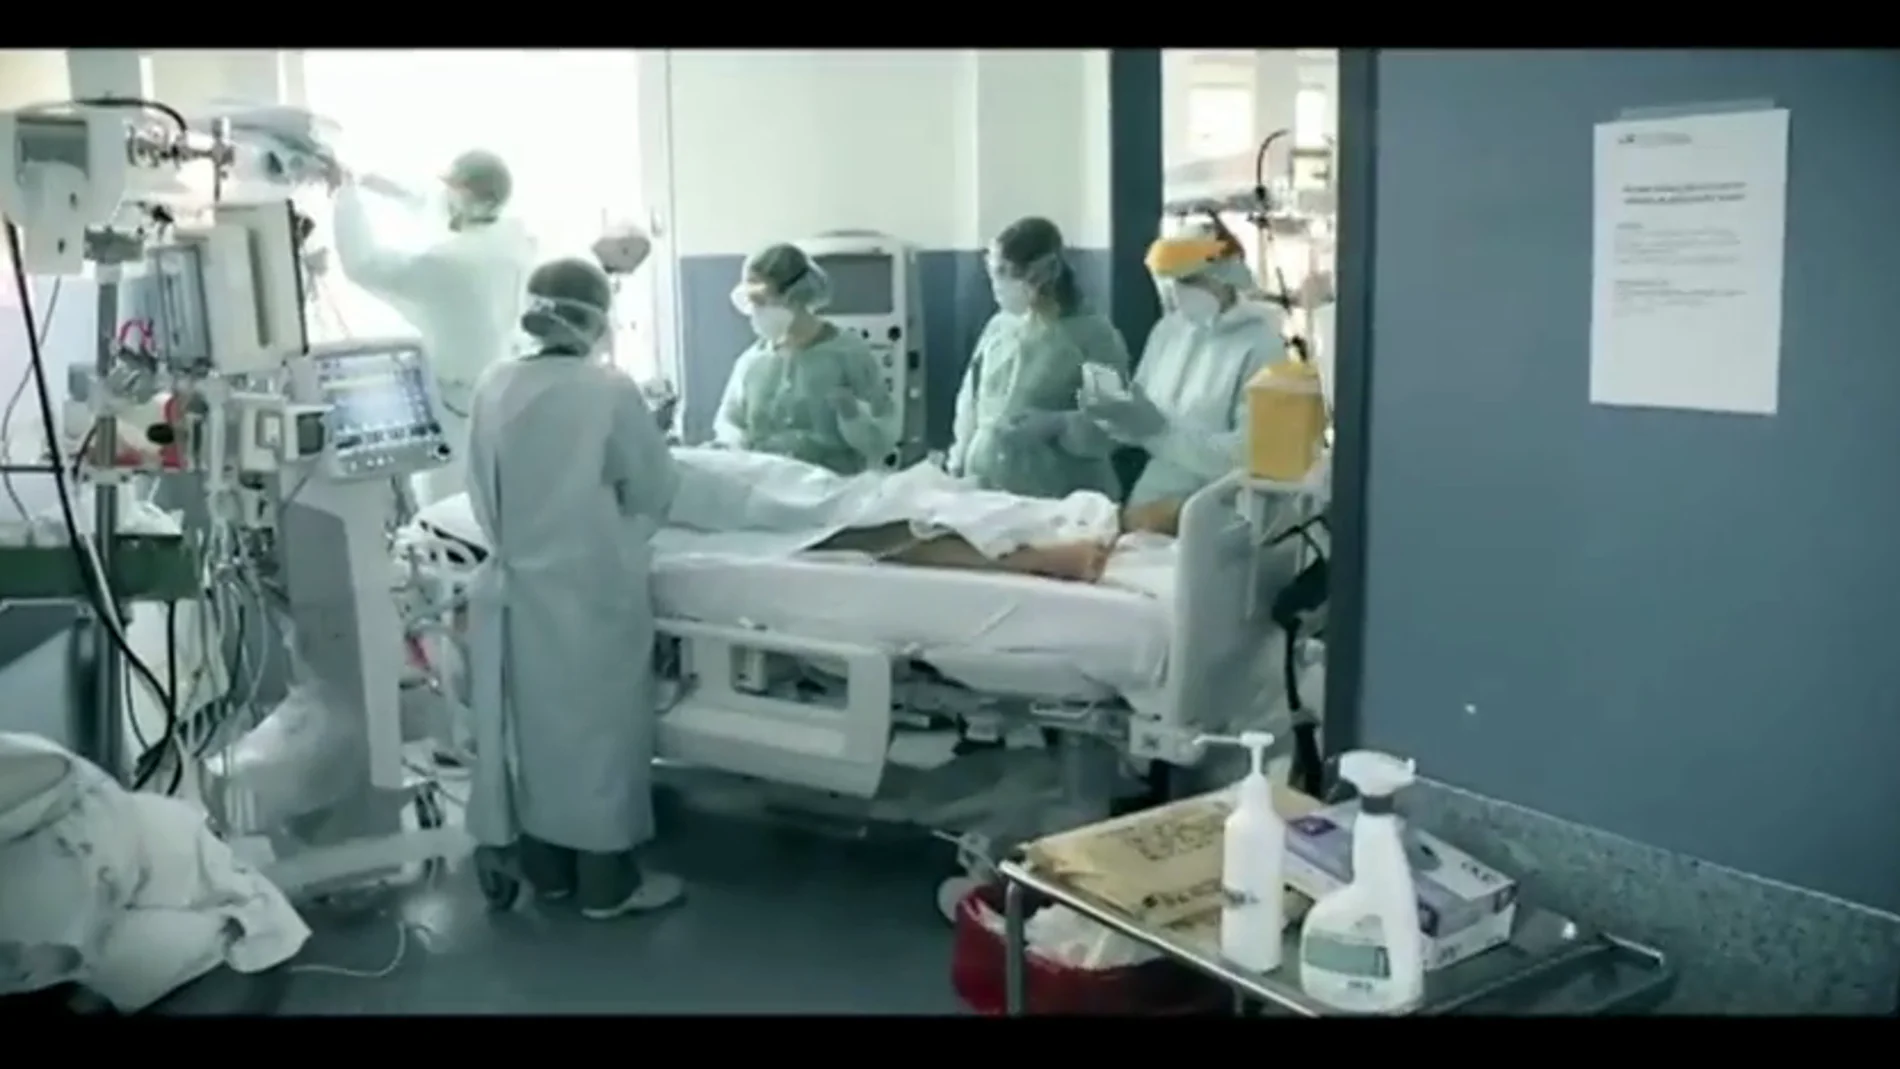 El emotivo vídeo homenaje a los sanitarios del 12 de octubre que han combatido el coronavirus